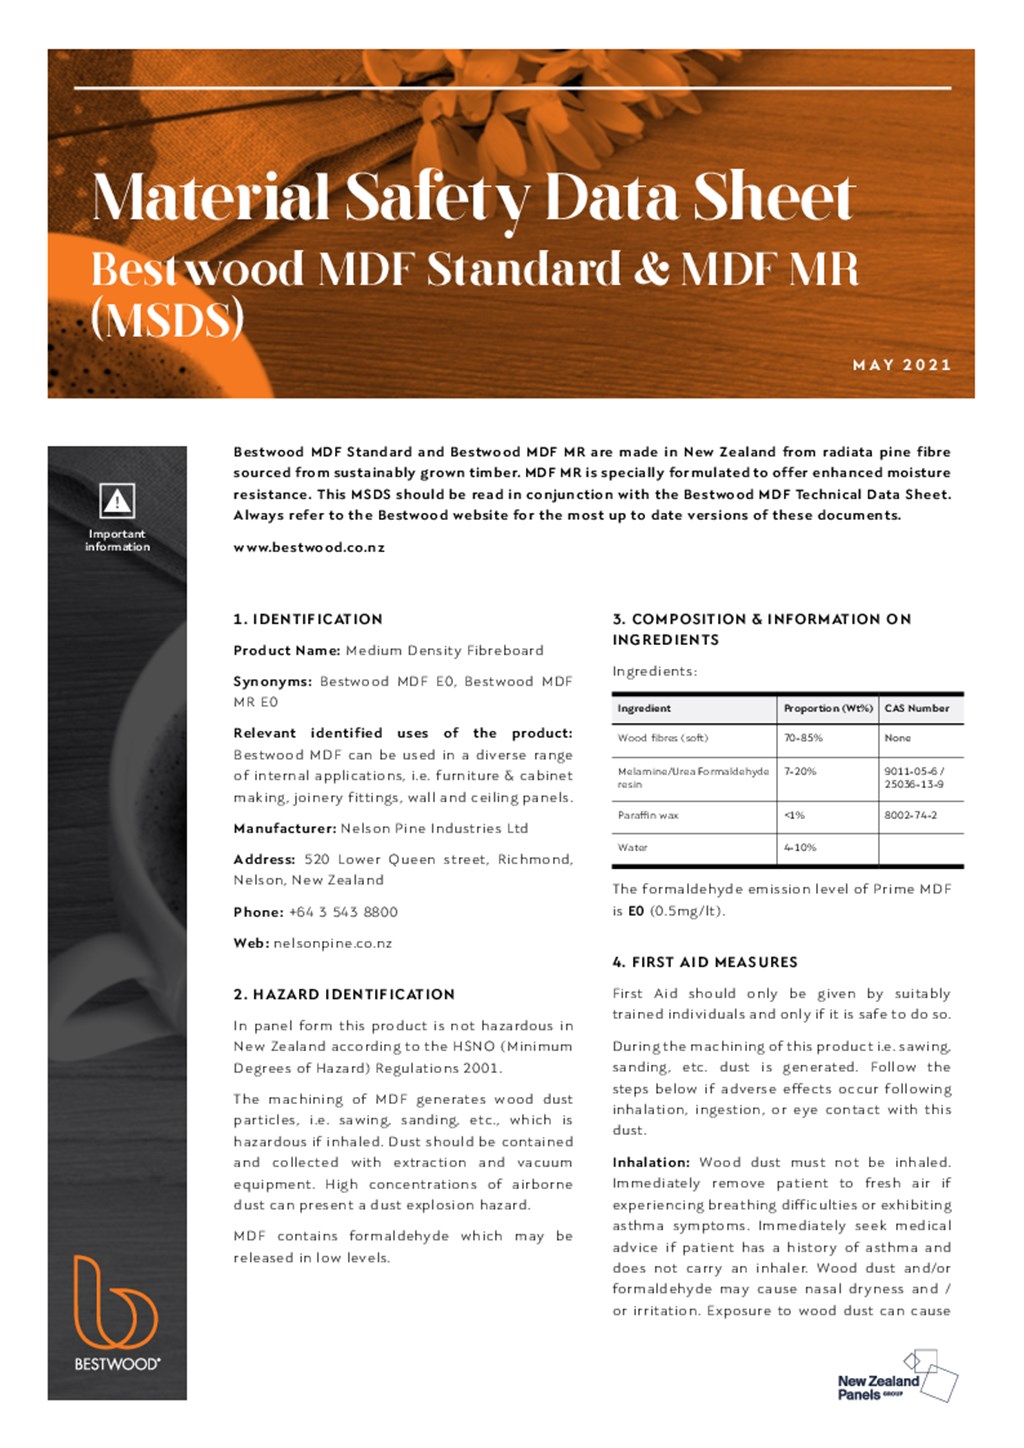 Bestwood MDF Standard and MDF MR MSDS